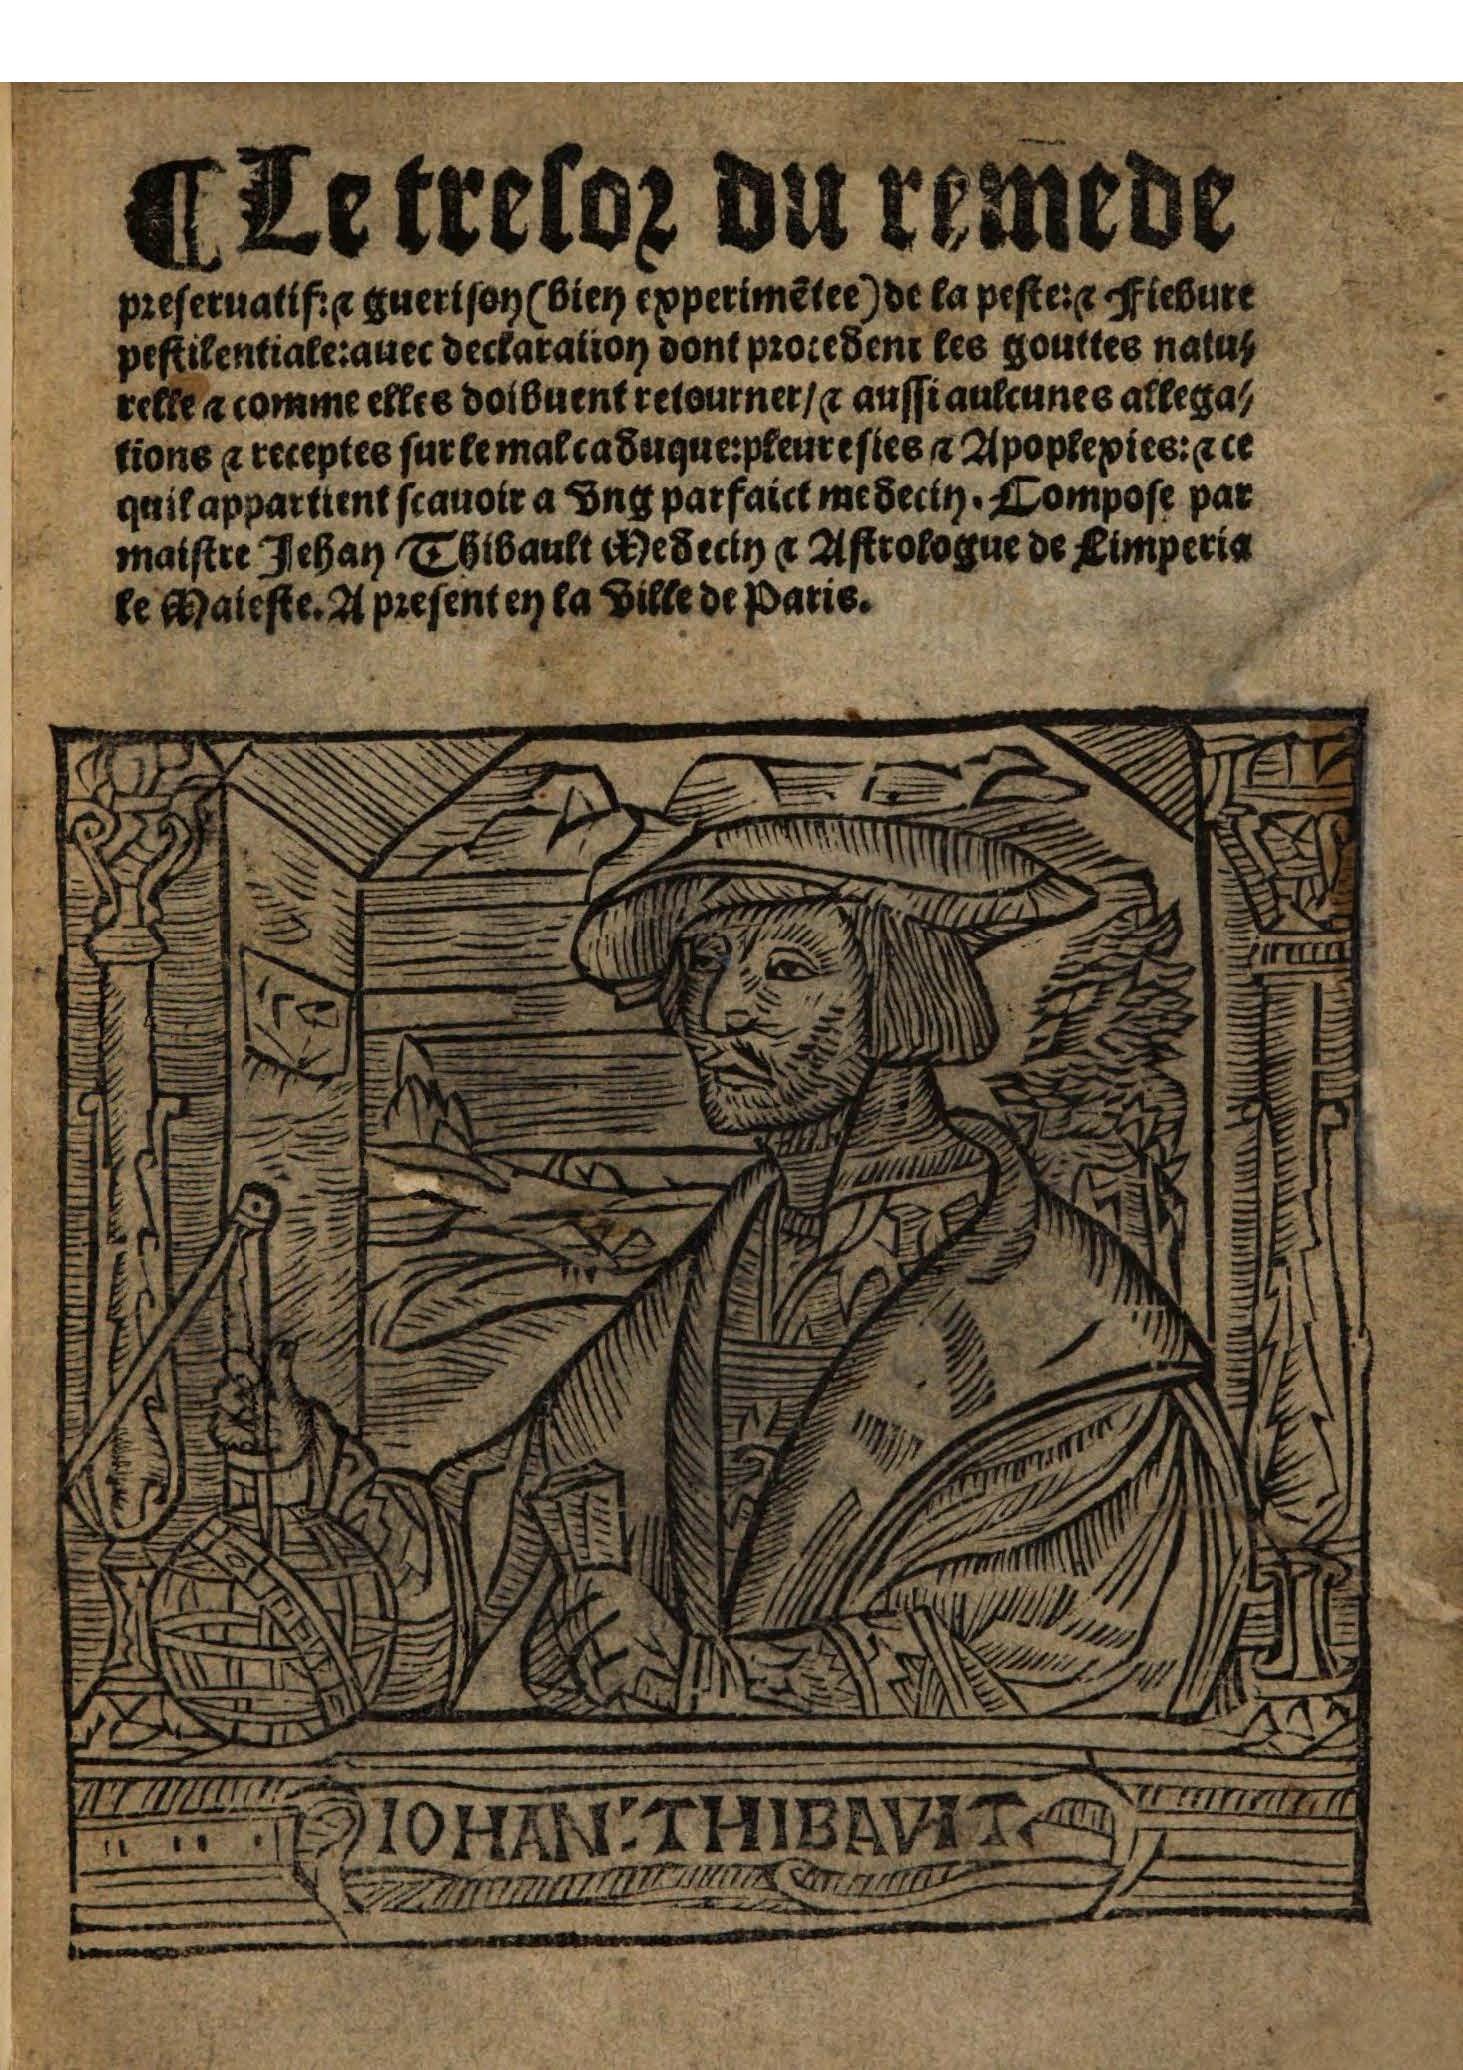 1544 s.n.1 Trésor du remède préservatif et guérison de la peste_British Library_Page_01.jpg